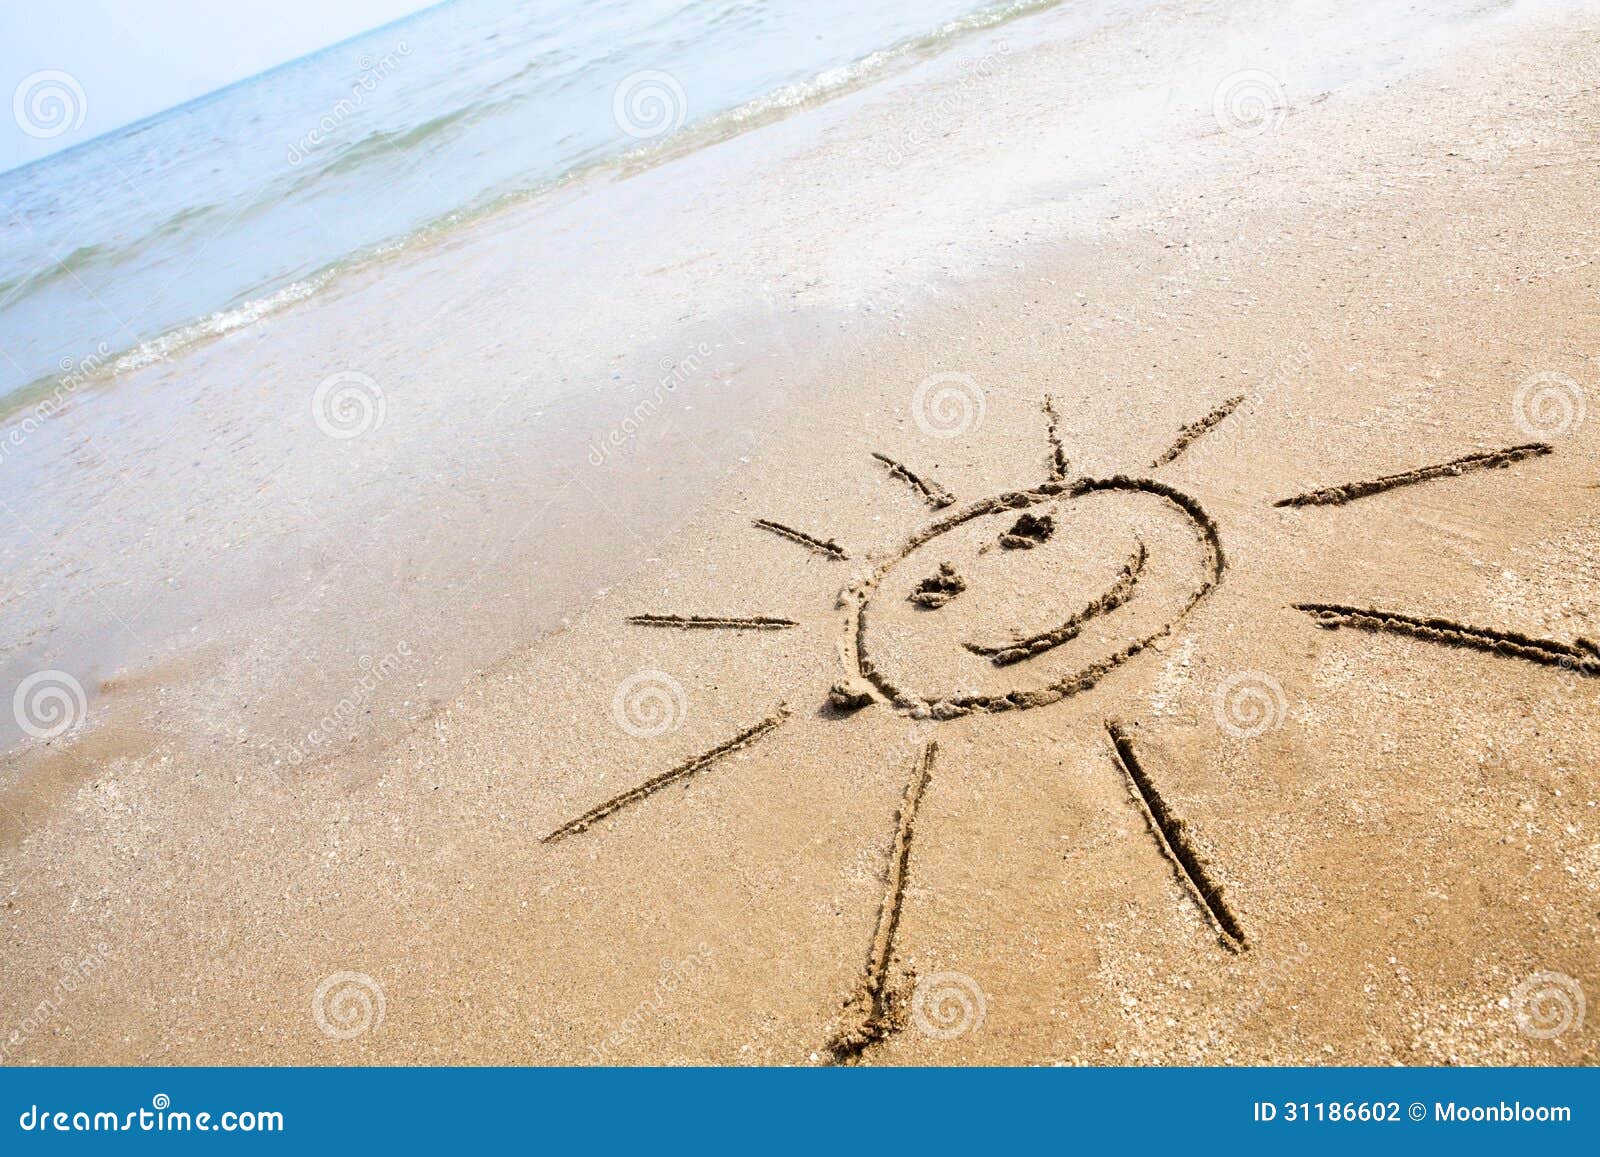 smiley sun on the beach